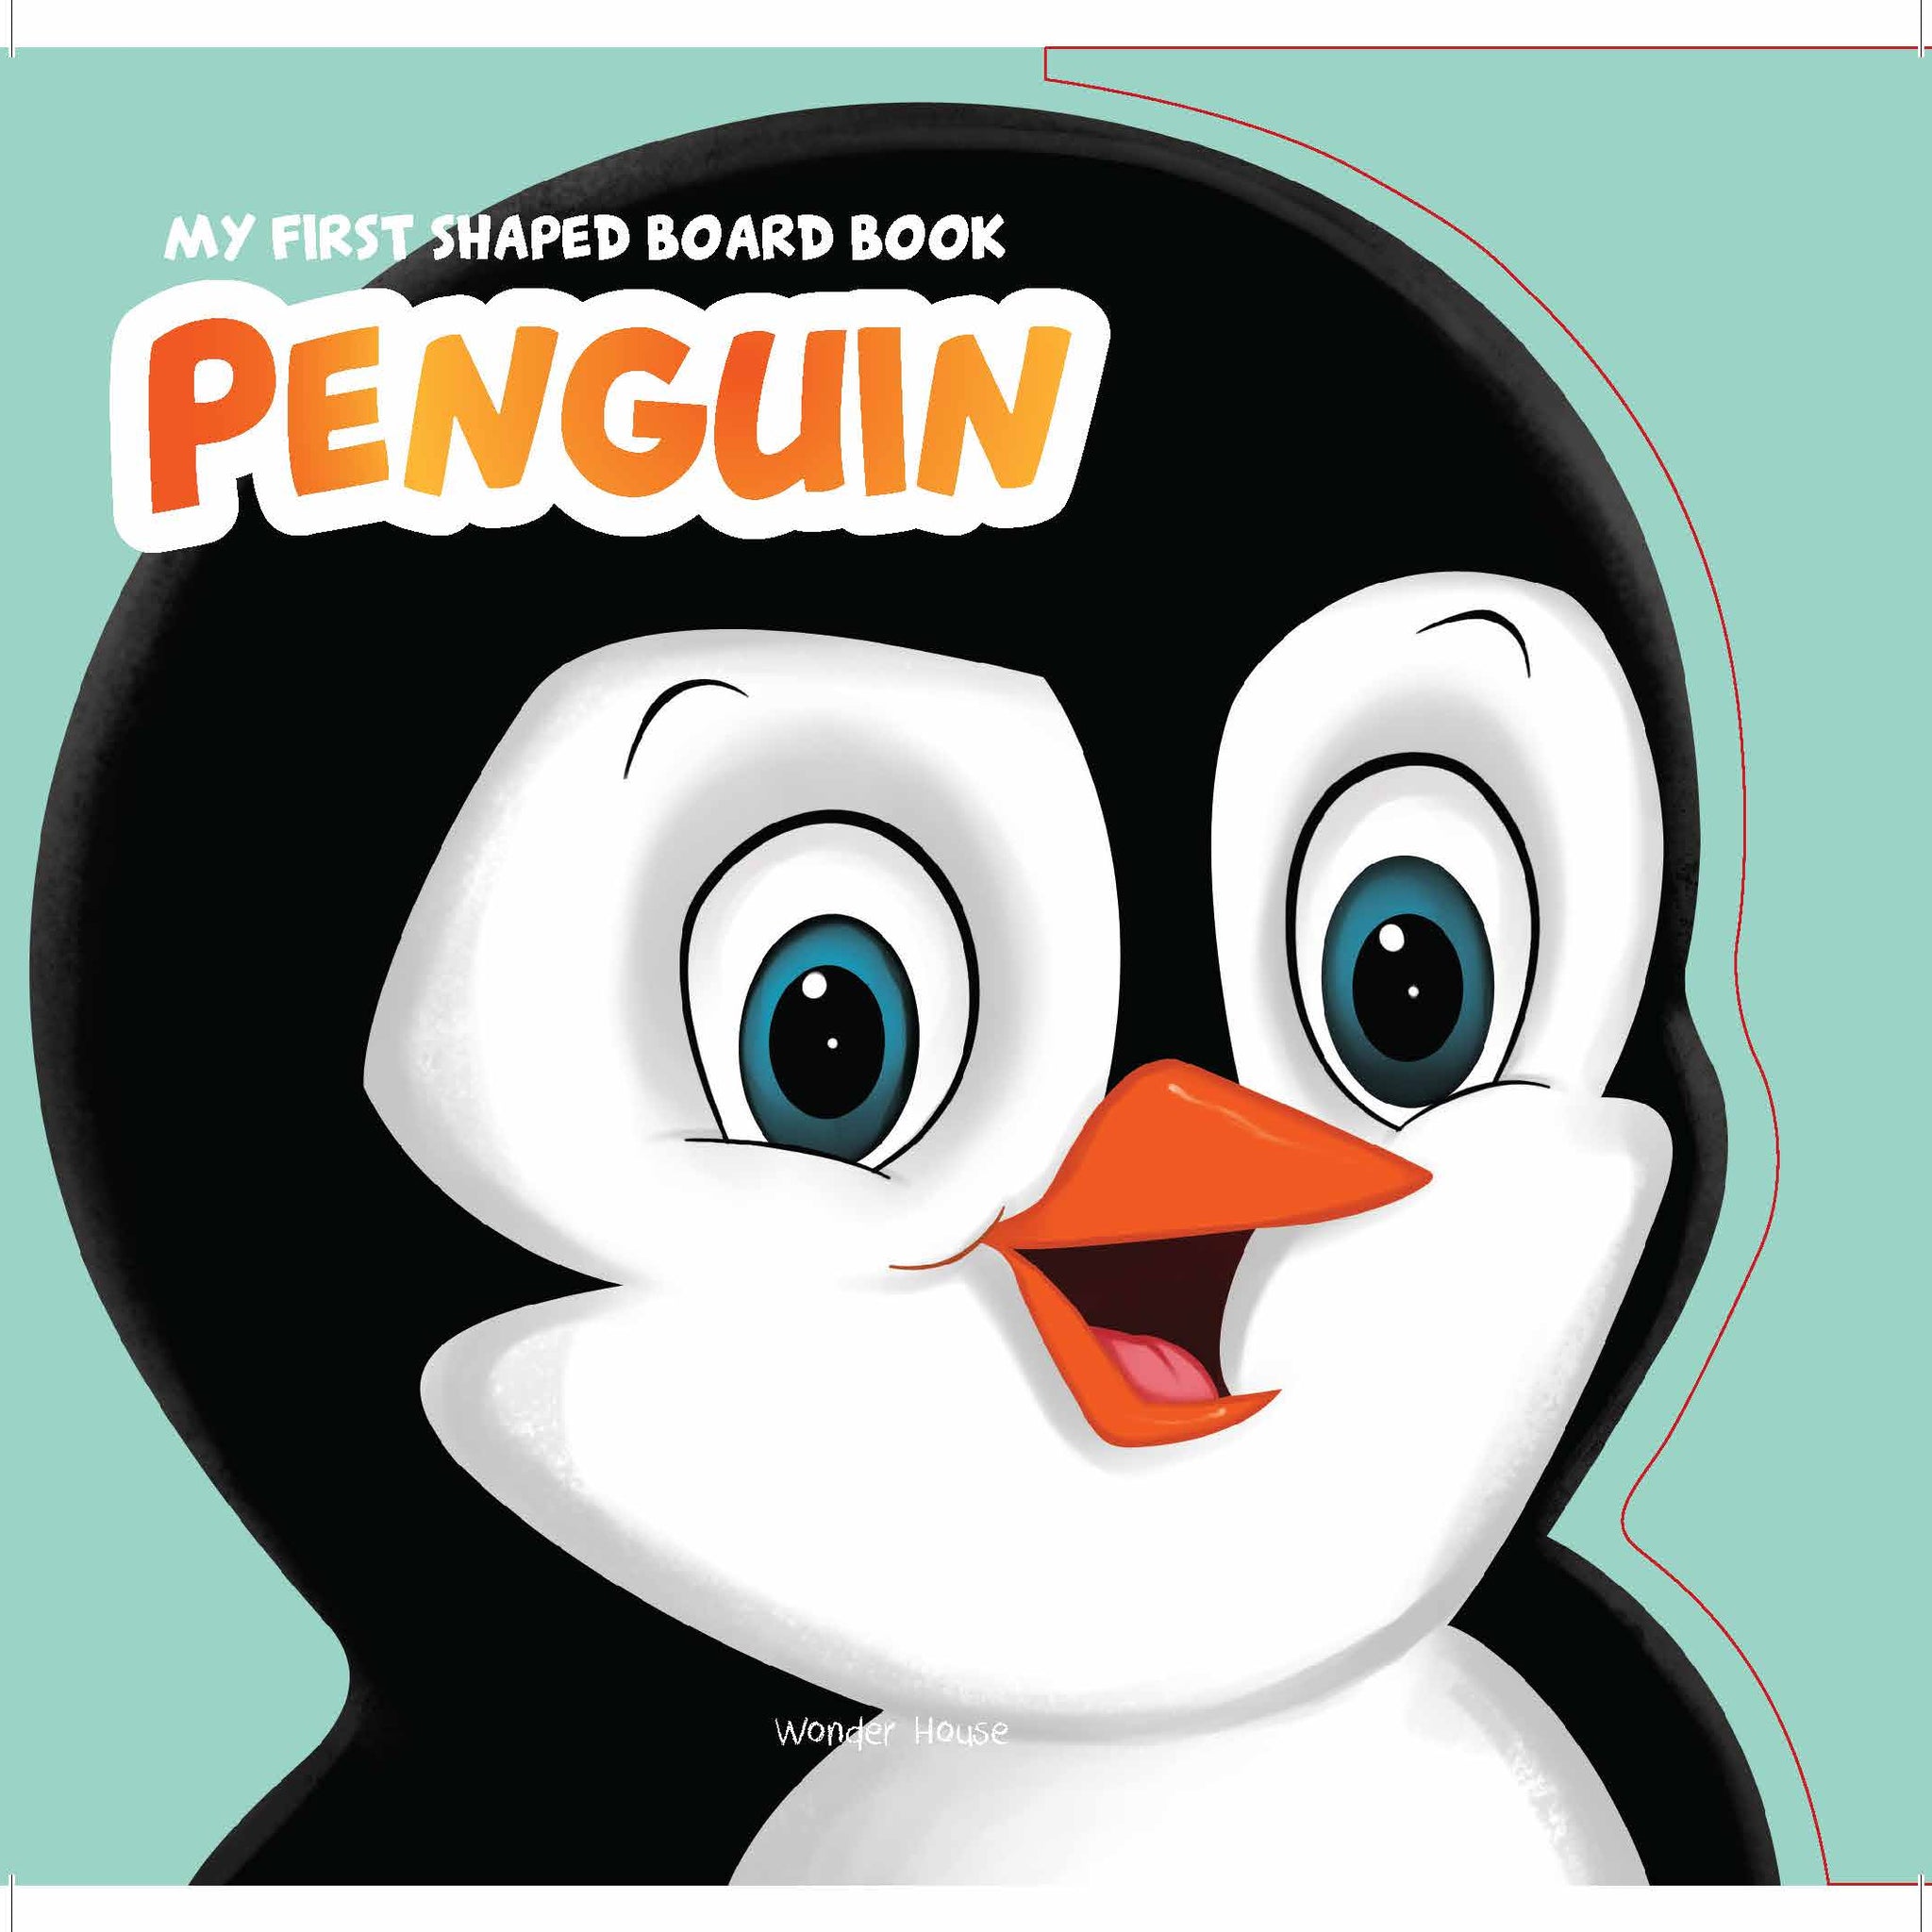 MyFirstShapedBoardbook- Penguin, Die-Cut Animals, Picture Book for Children